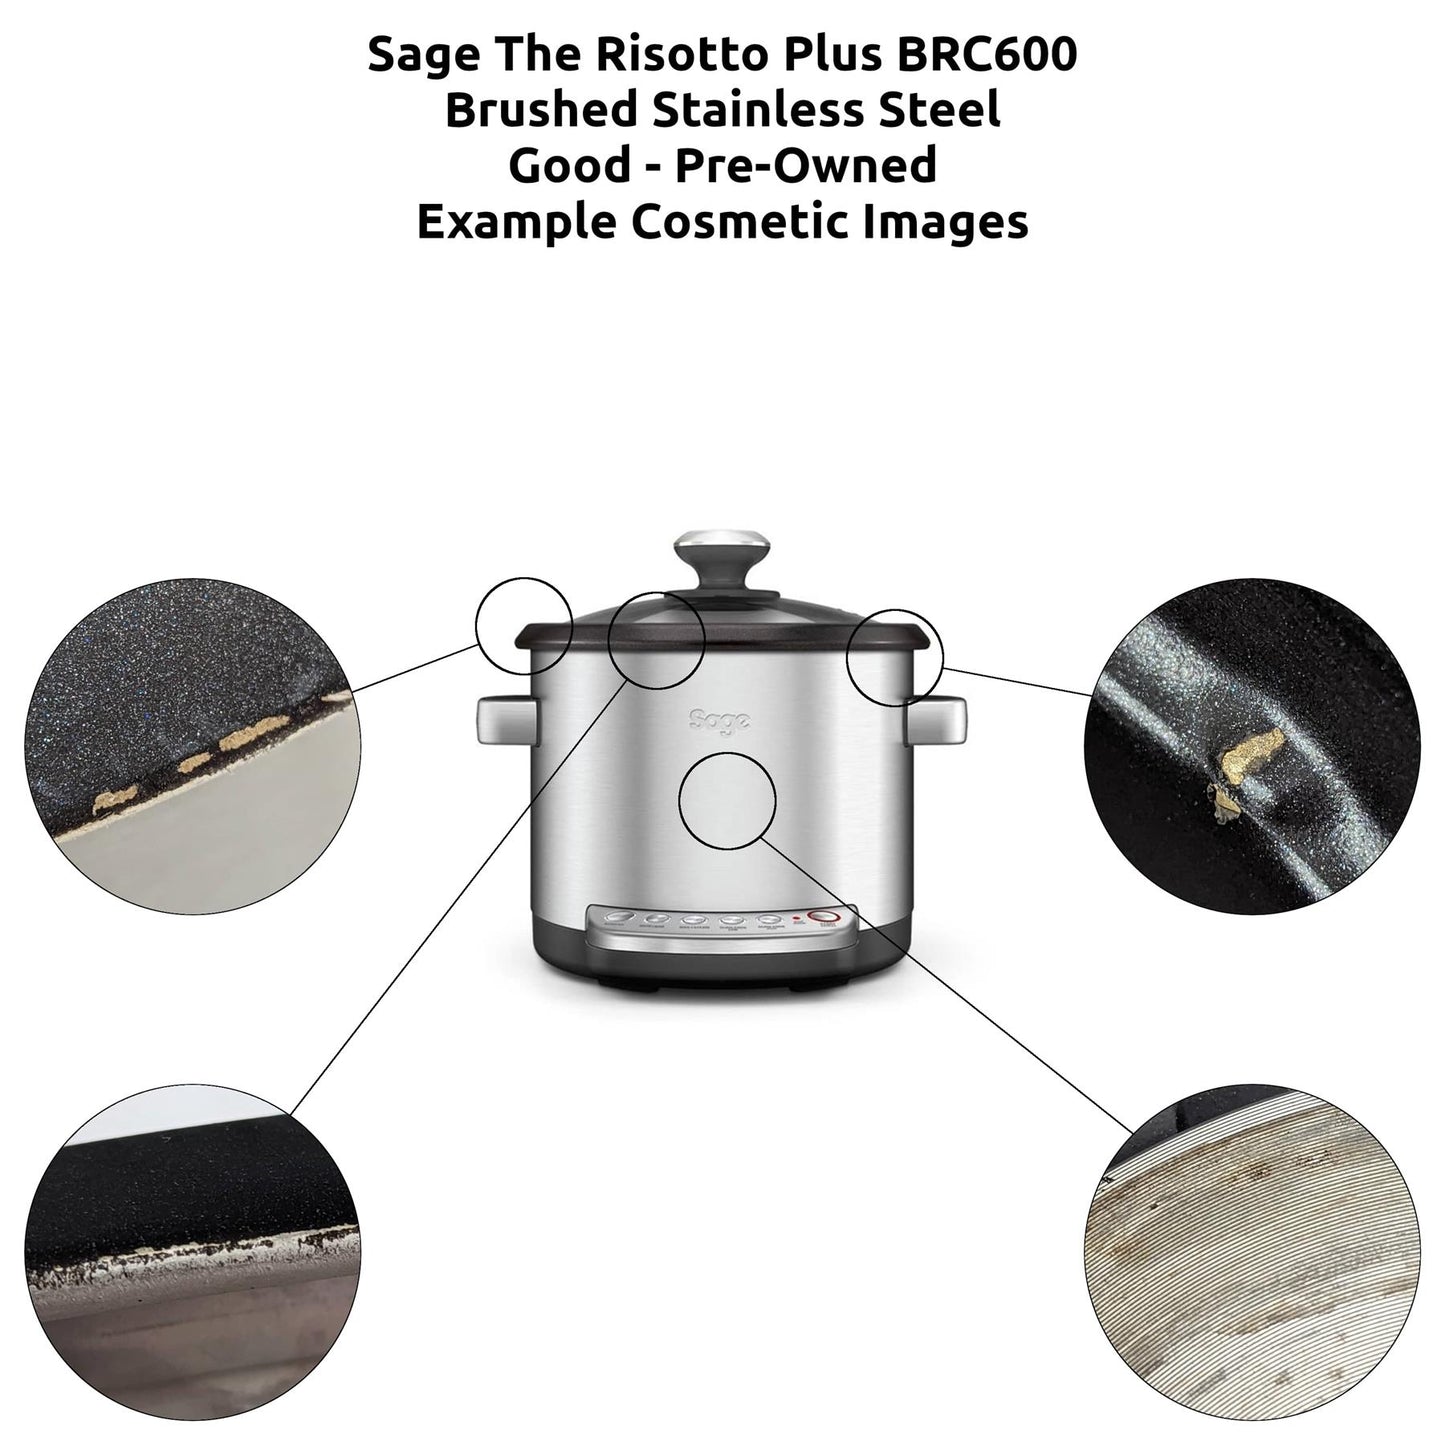 Sage The Risotto Plus BRC600 Multi-Cooker